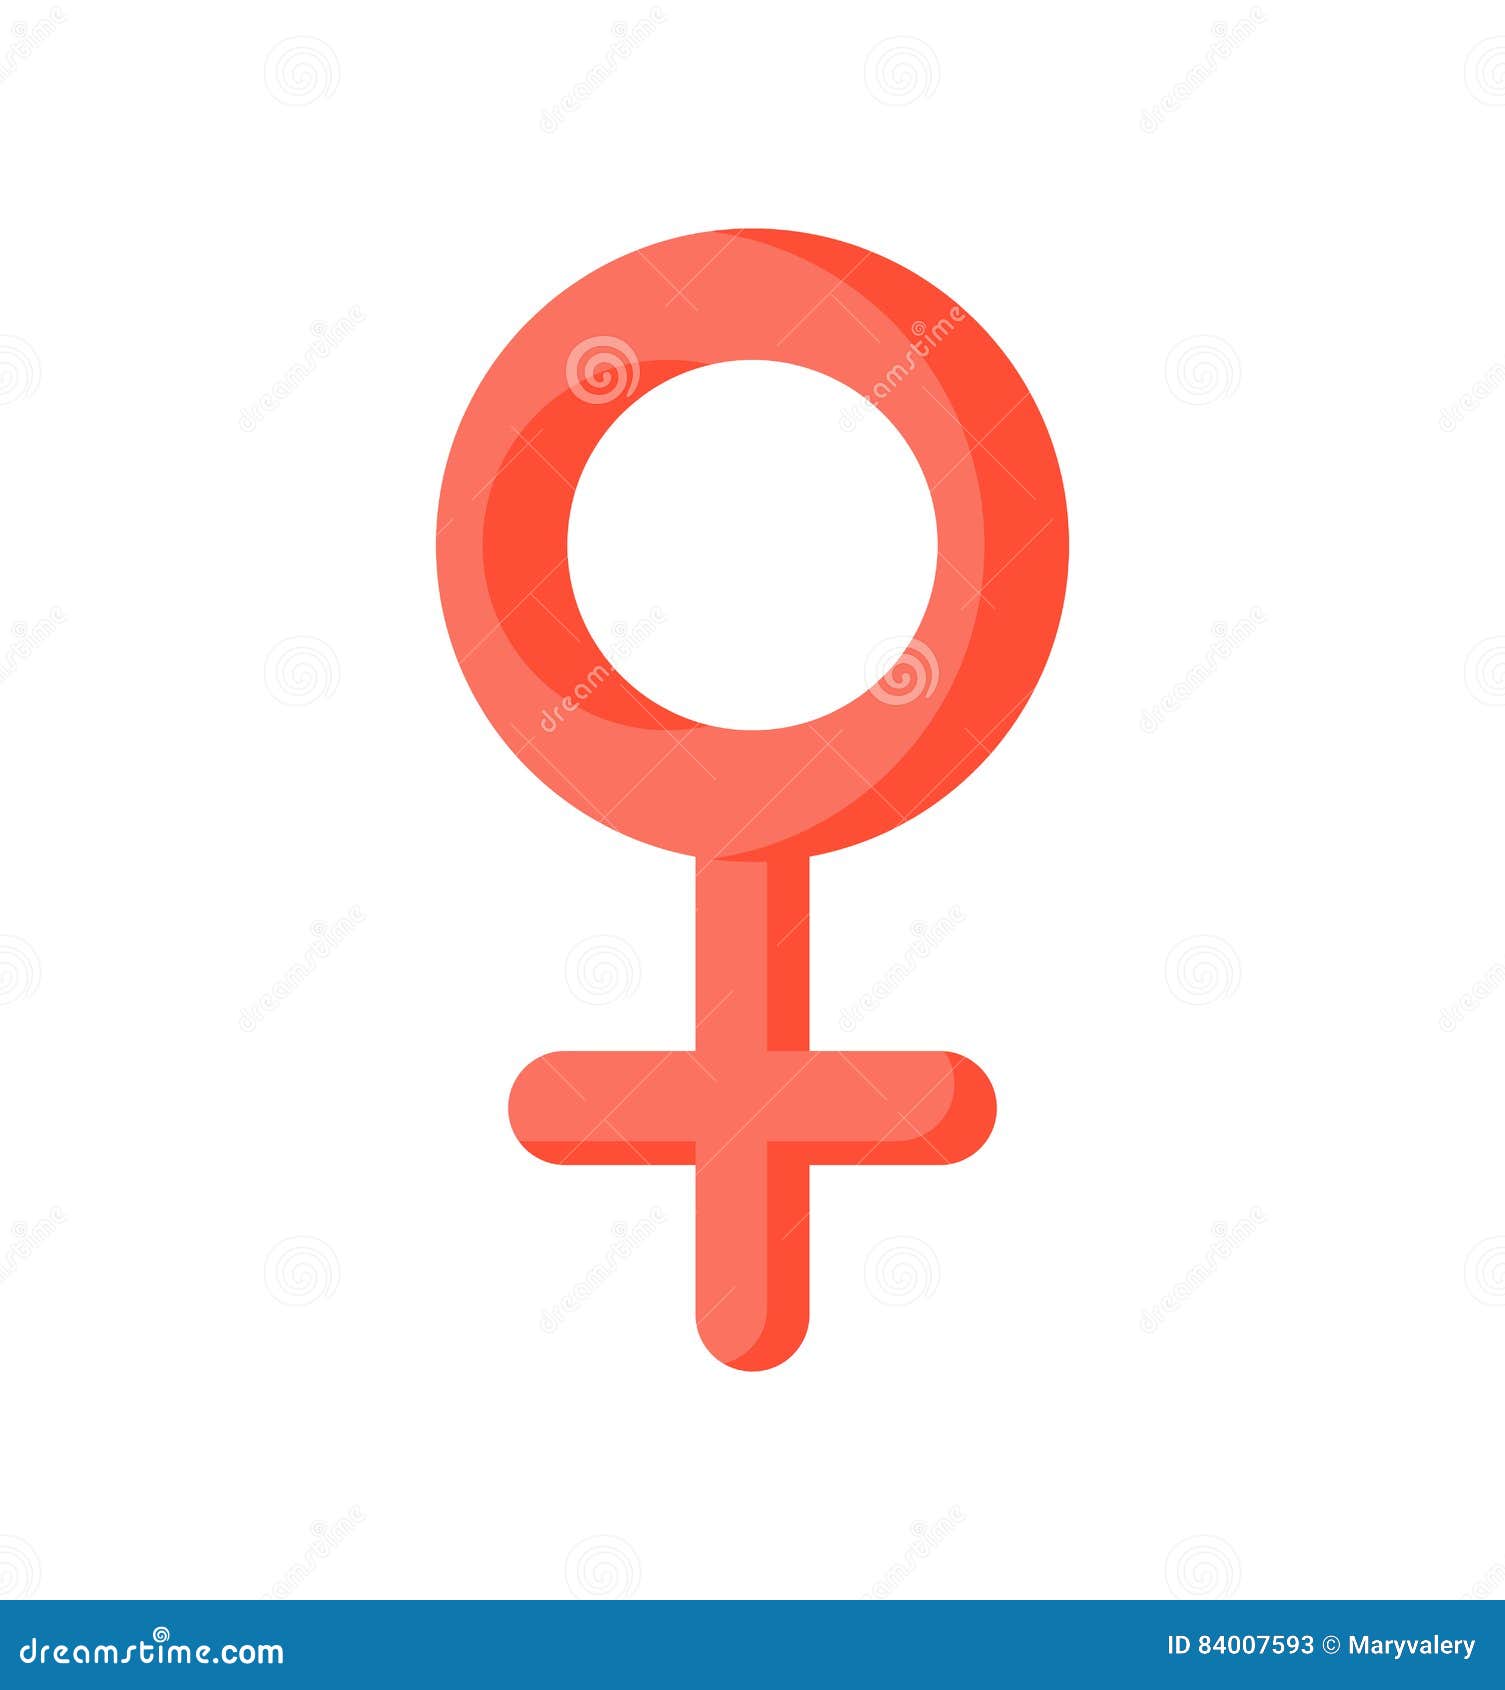 Изолированные знаки. Женский символ. Знак Венеры. Символ Венеры на белом фоне. Атомная женщина знак.